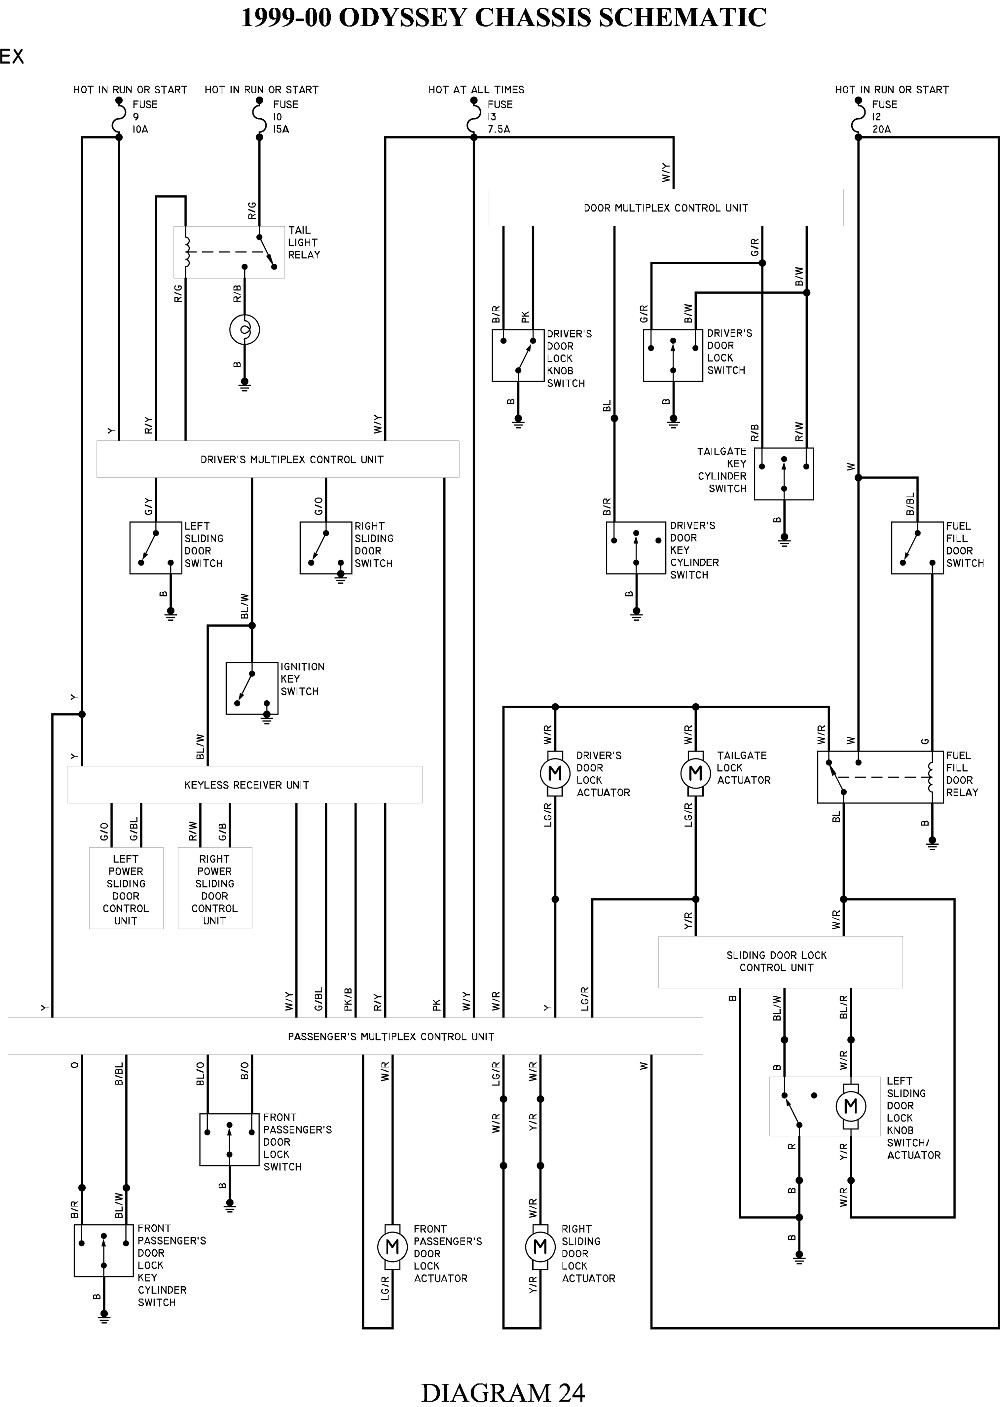 2007 Odyssey Power Door Wiring Diagram Honda Odyssey Power Window Wiring Diagram Database Wiring Diagram Sample Of 2007 Odyssey Power Door Wiring Diagram